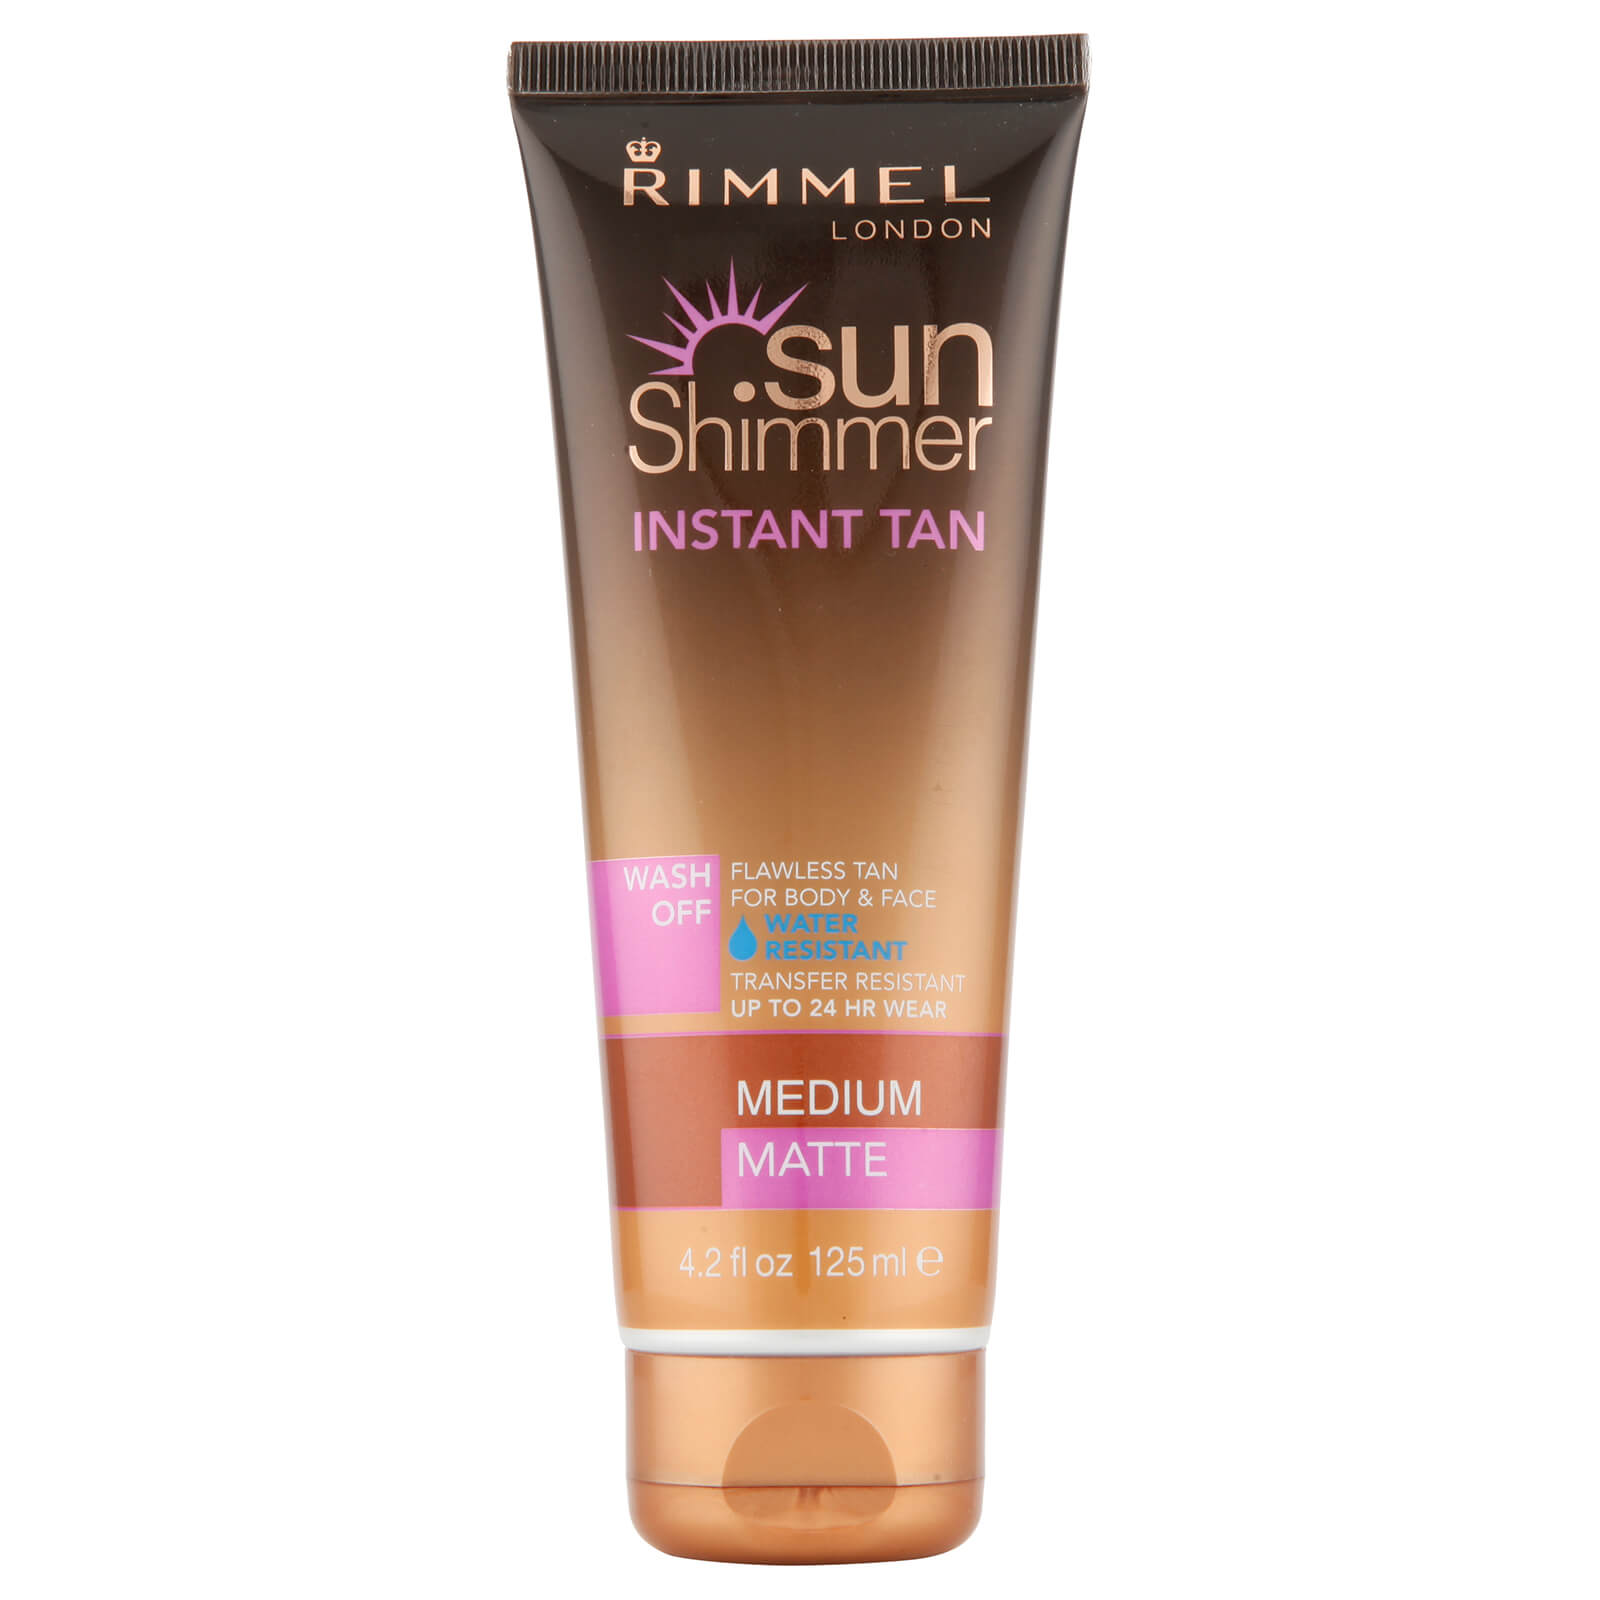 Rimmel Sunshimmer Water Resistant Wash Off Instant Tan - Matte (125ml) - Medium Matte